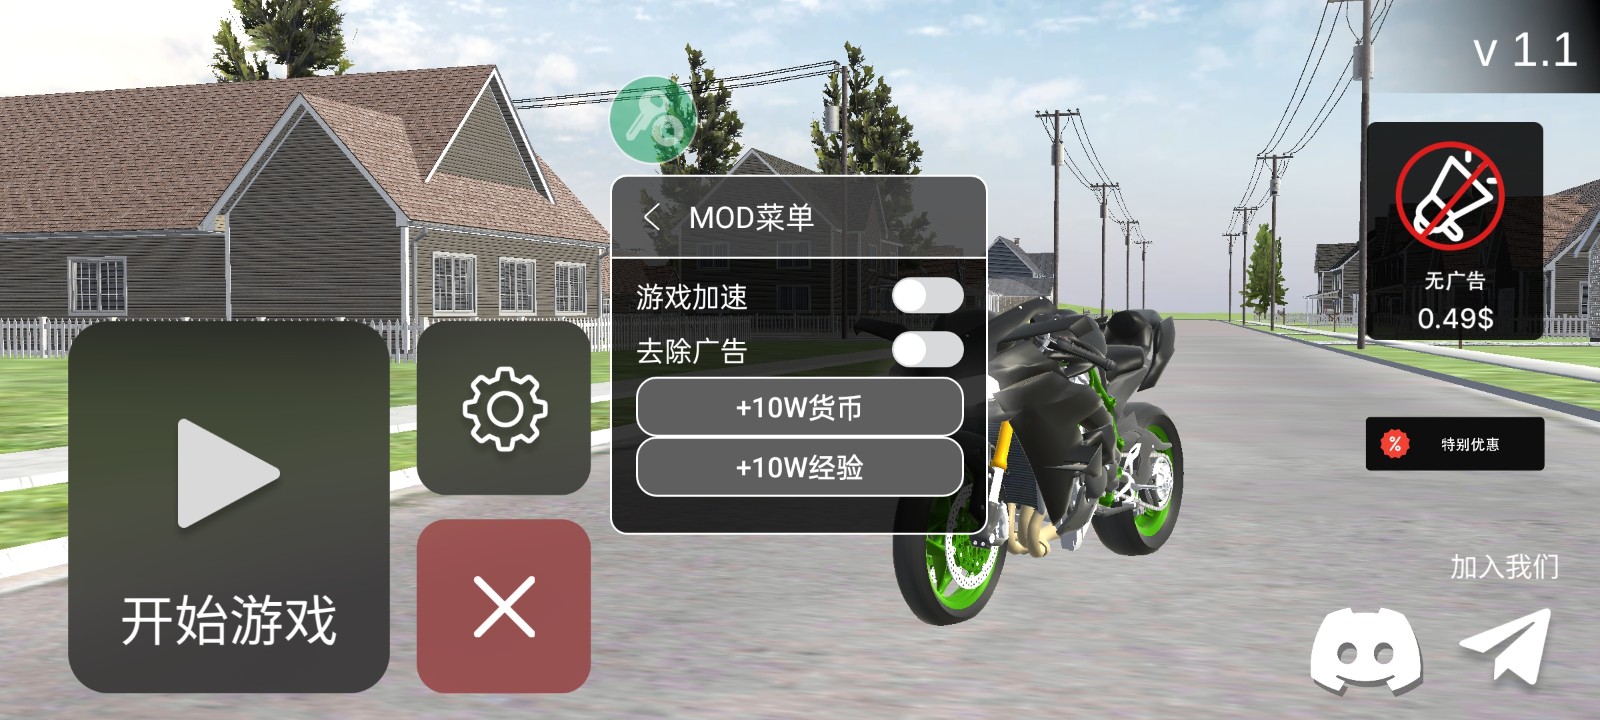 摩托车出售模拟器